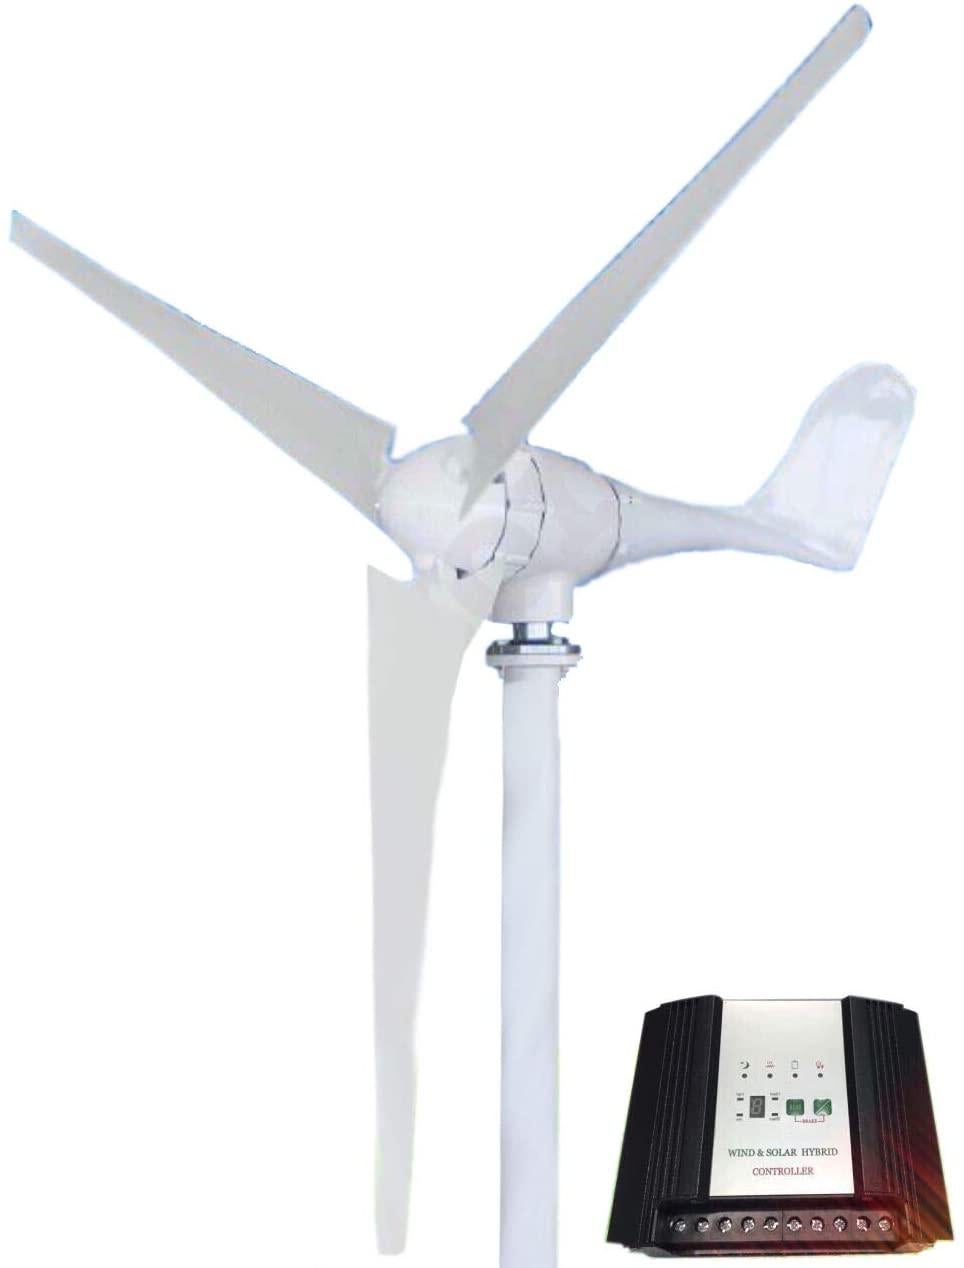 KASA 300W Wind Turbine Generator 24V 3 Blade Digital Hybrid Wind Solar Controller